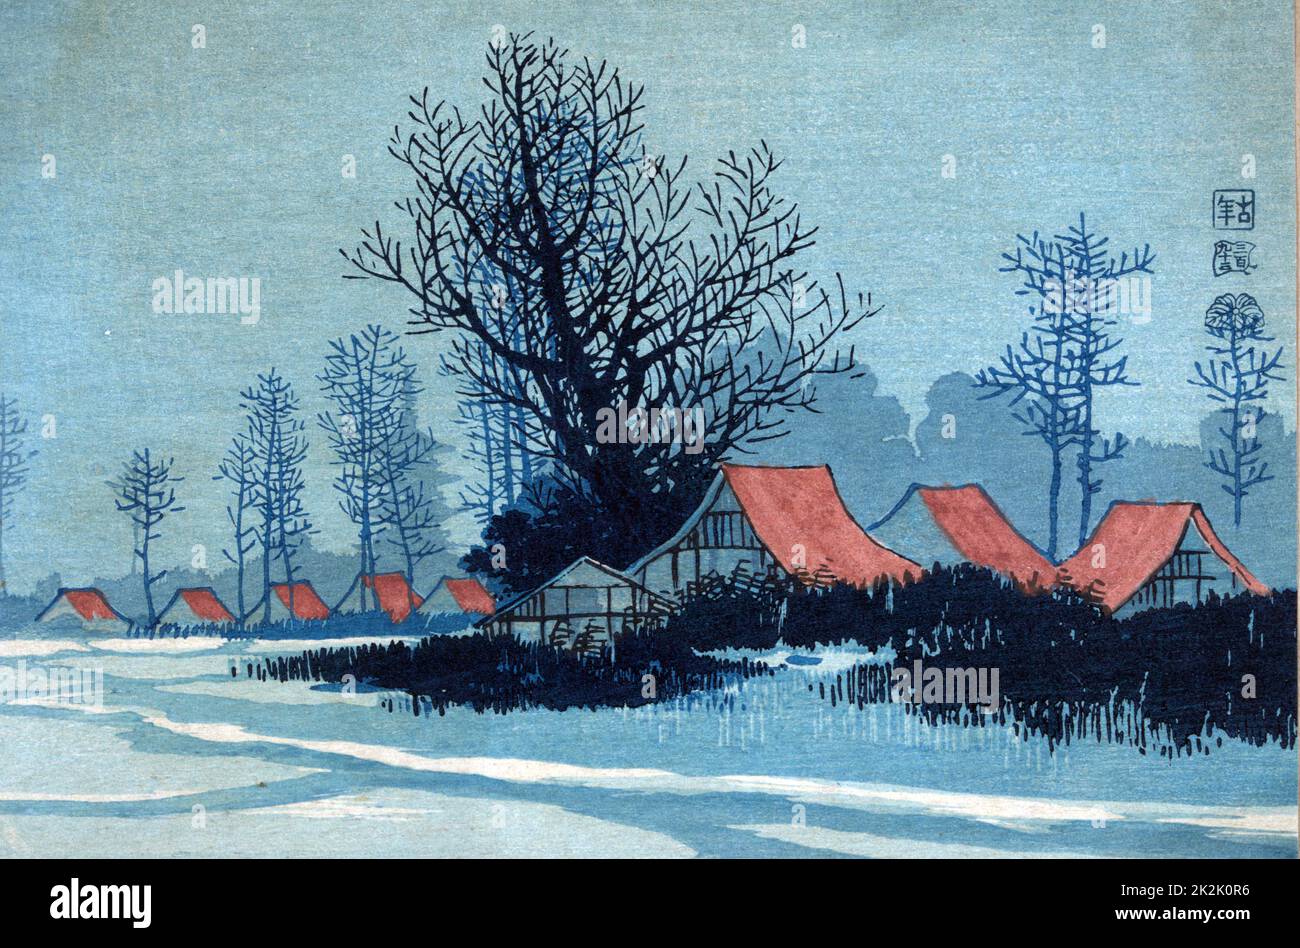 Gebäude mit roten Dächern in einer Winterlandschaft. Konen Uehera (1878-1940), japanischer Künstler. Drucken 1900-1920. Schnee Bäume Frieden ruhige Stille Stockfoto